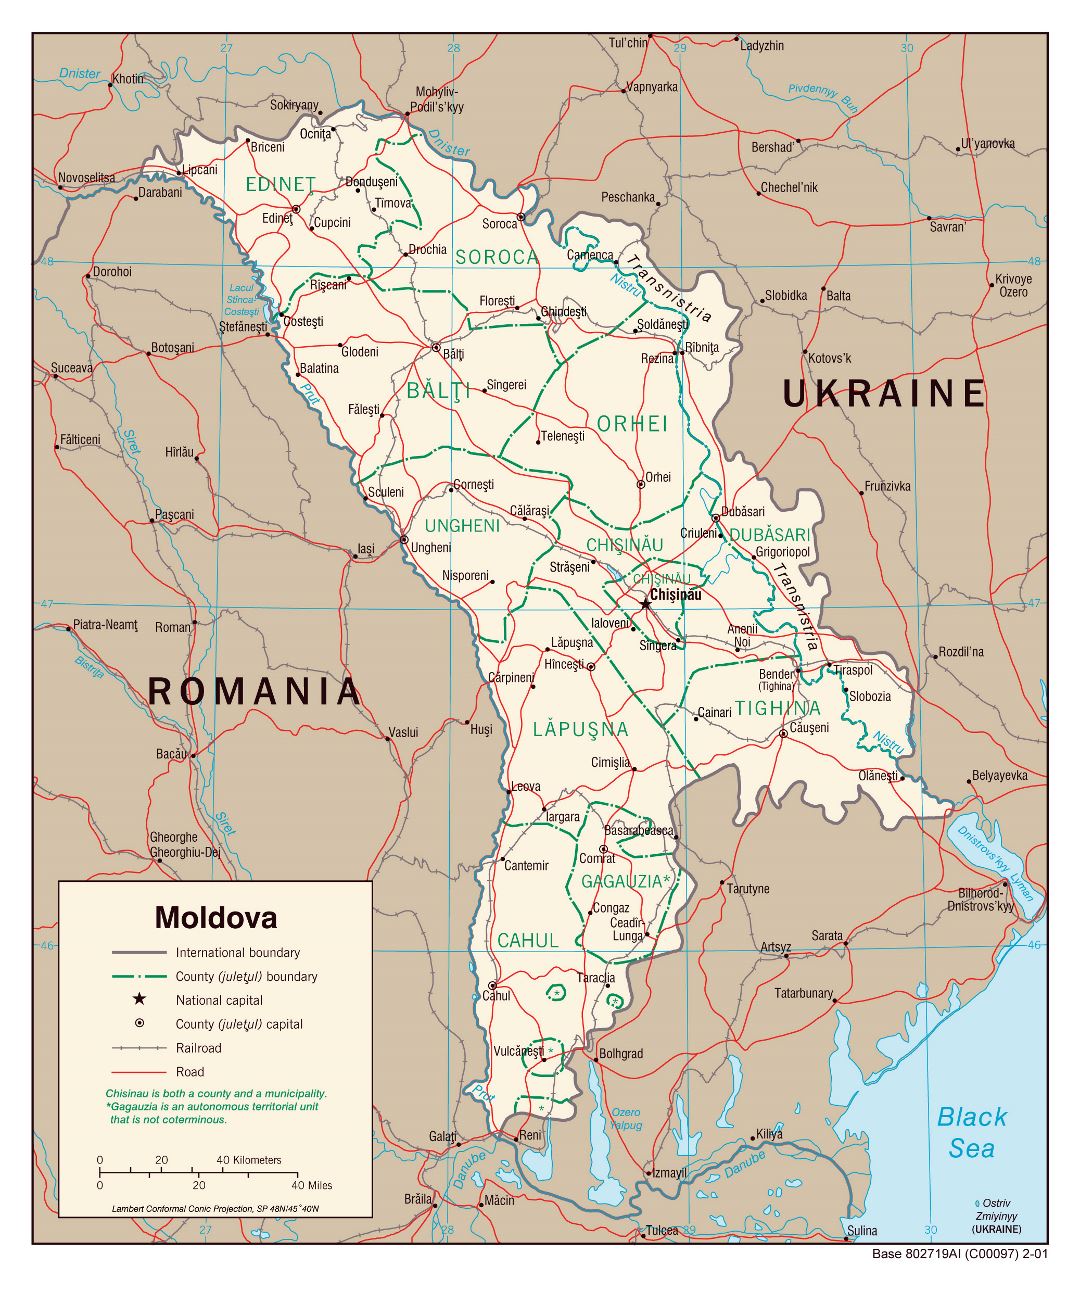 Grande detallado mapa política y administrativa de Moldavia con carreteras, ferrocarriles y principales ciudades - 2001